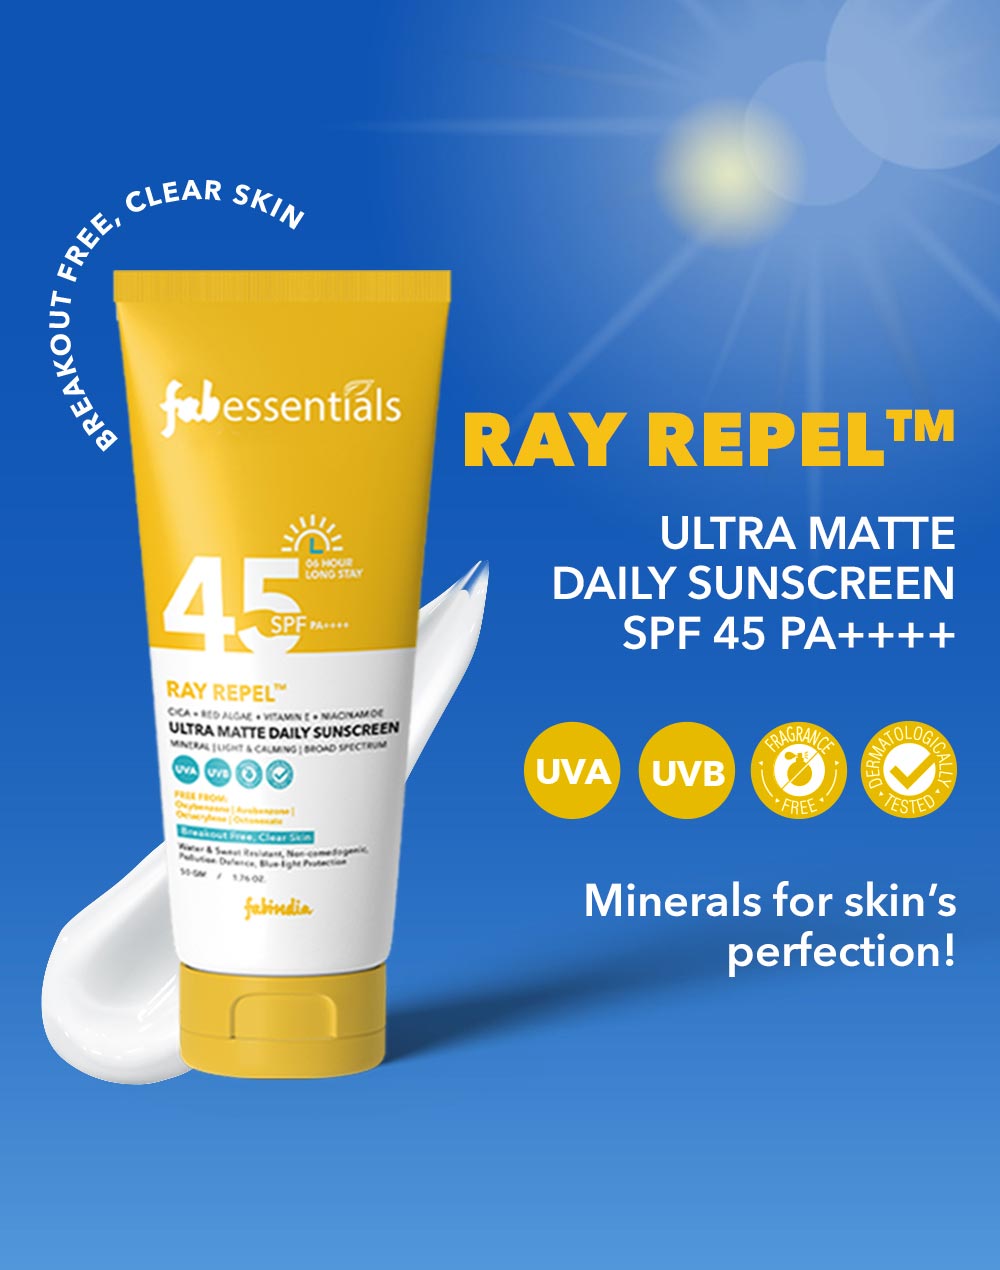 Fabessentials Ultra Matte Daily Sunscreen SPF 45 PA++++ -50 gm